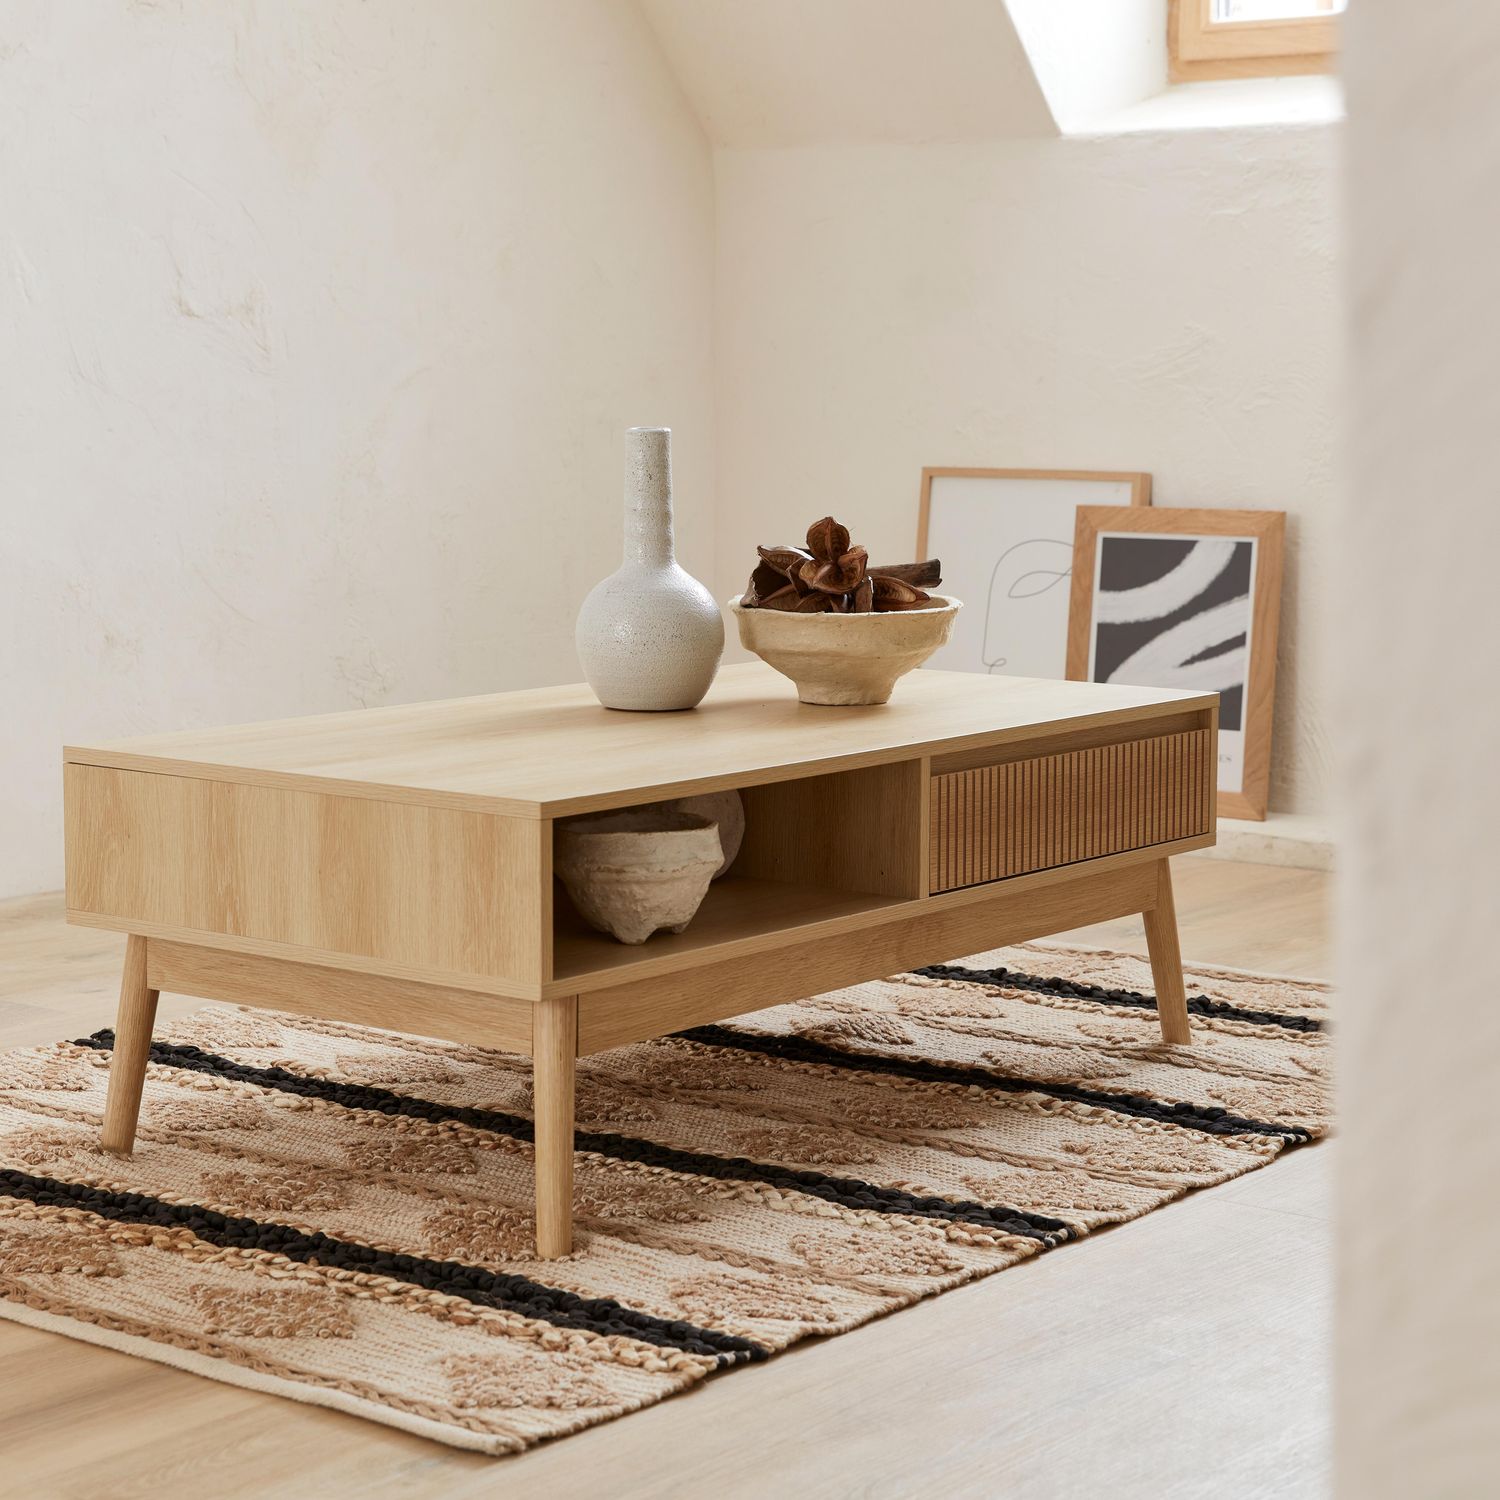 Table basse scandinave décor bois rainuré 2 niches, 1 tiroir
